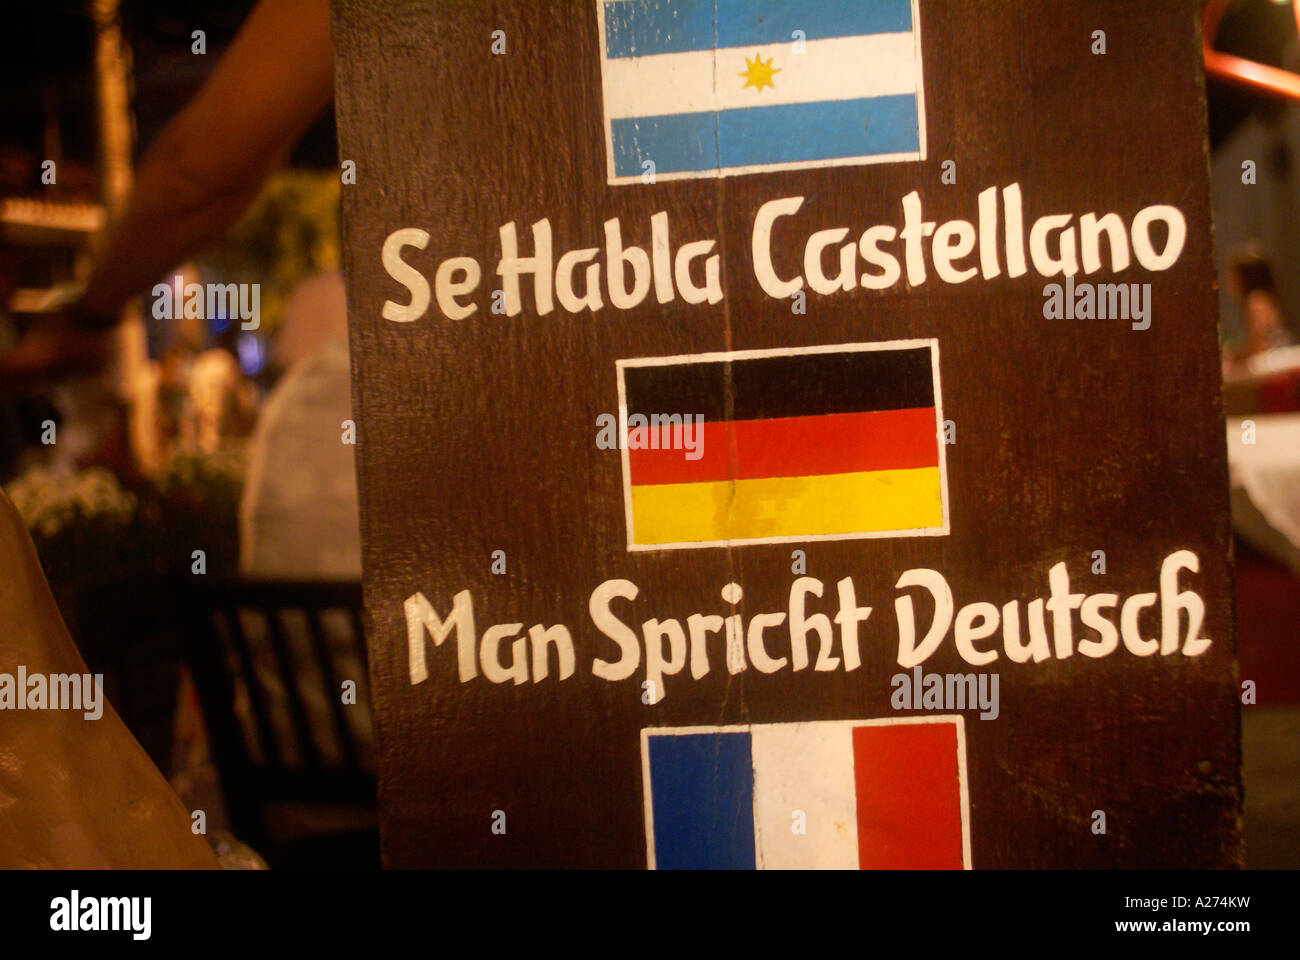 Pancarte dans un restaurant à Buzios, Brésil disant 'Man spricht Deutsch' et 'Se Habla Castellano' avec drapeau allemand Banque D'Images